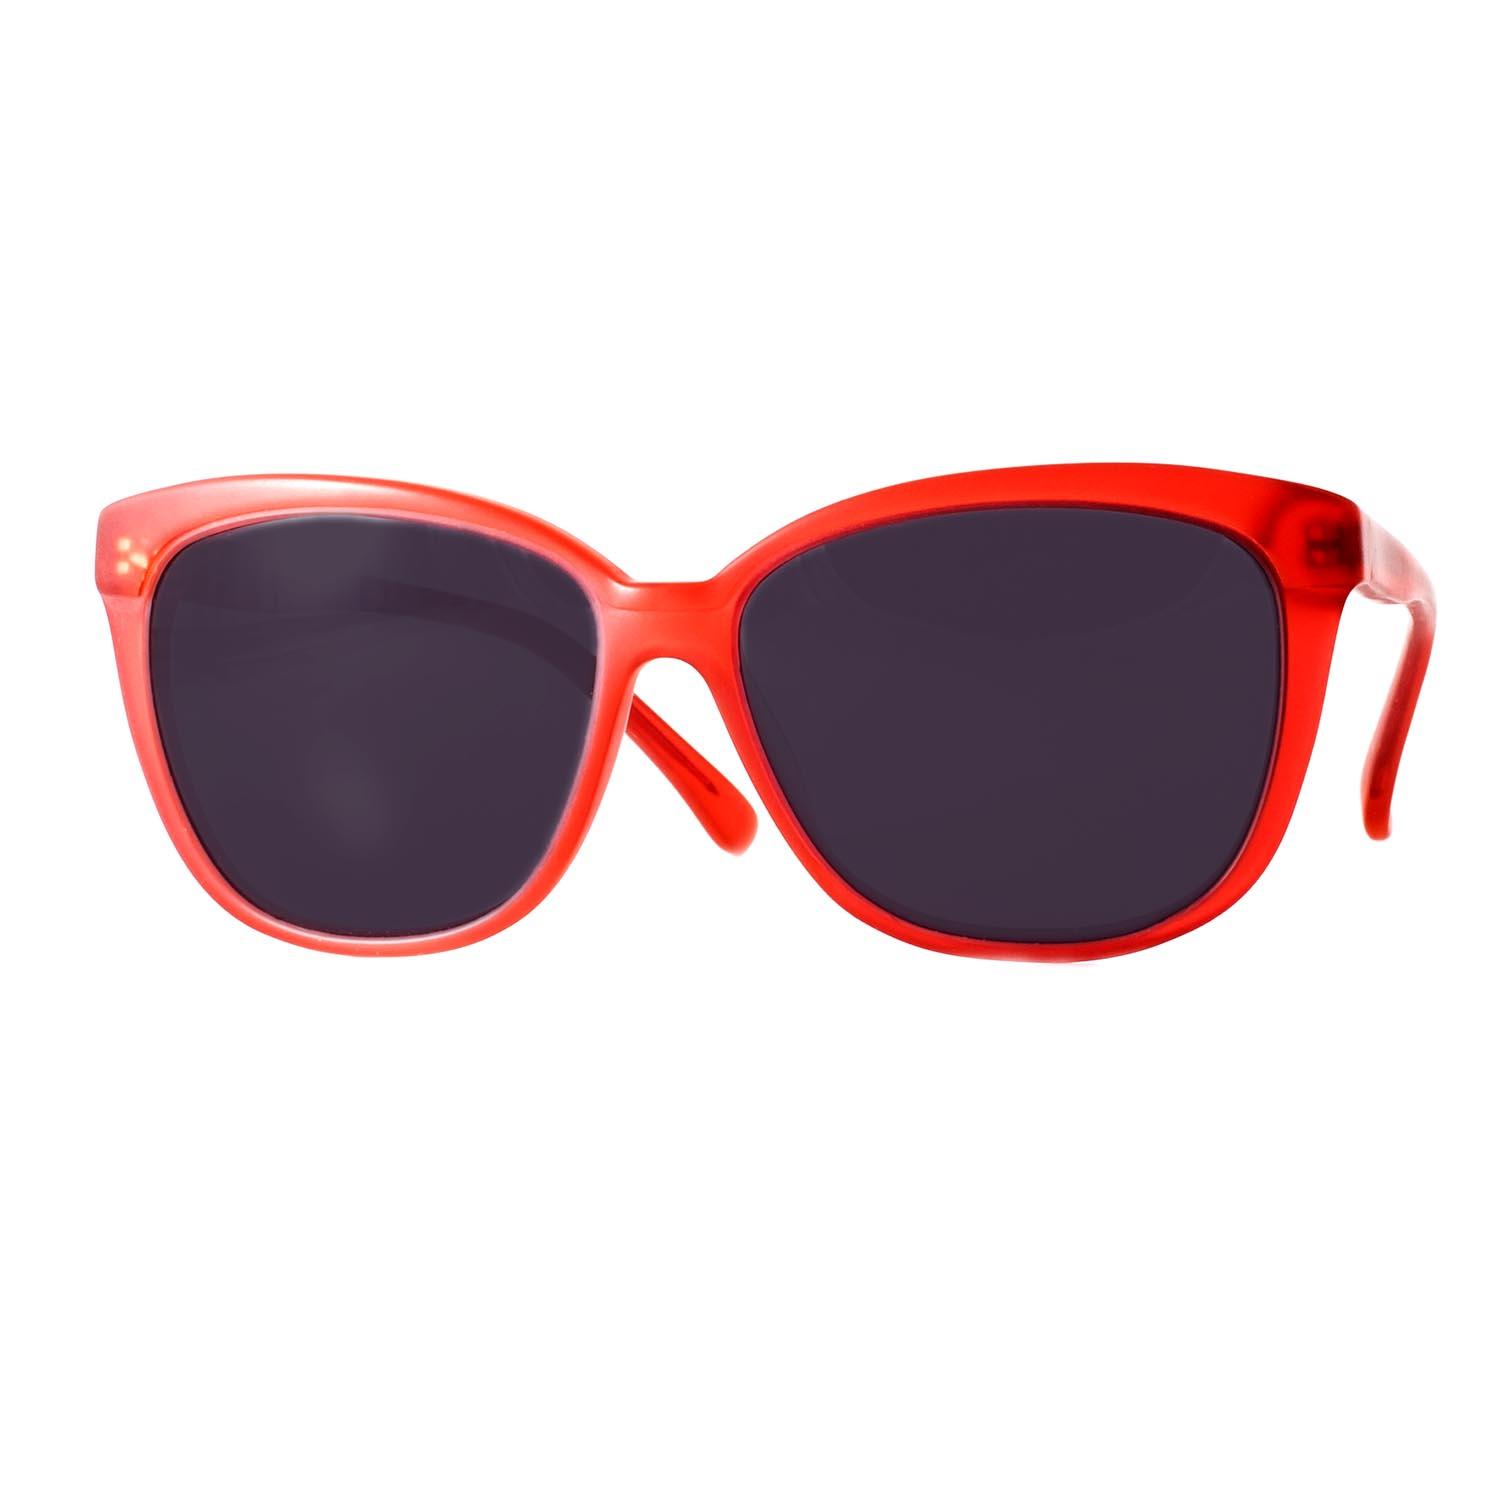 Gafas de sol polarizadas Monaco color rojo